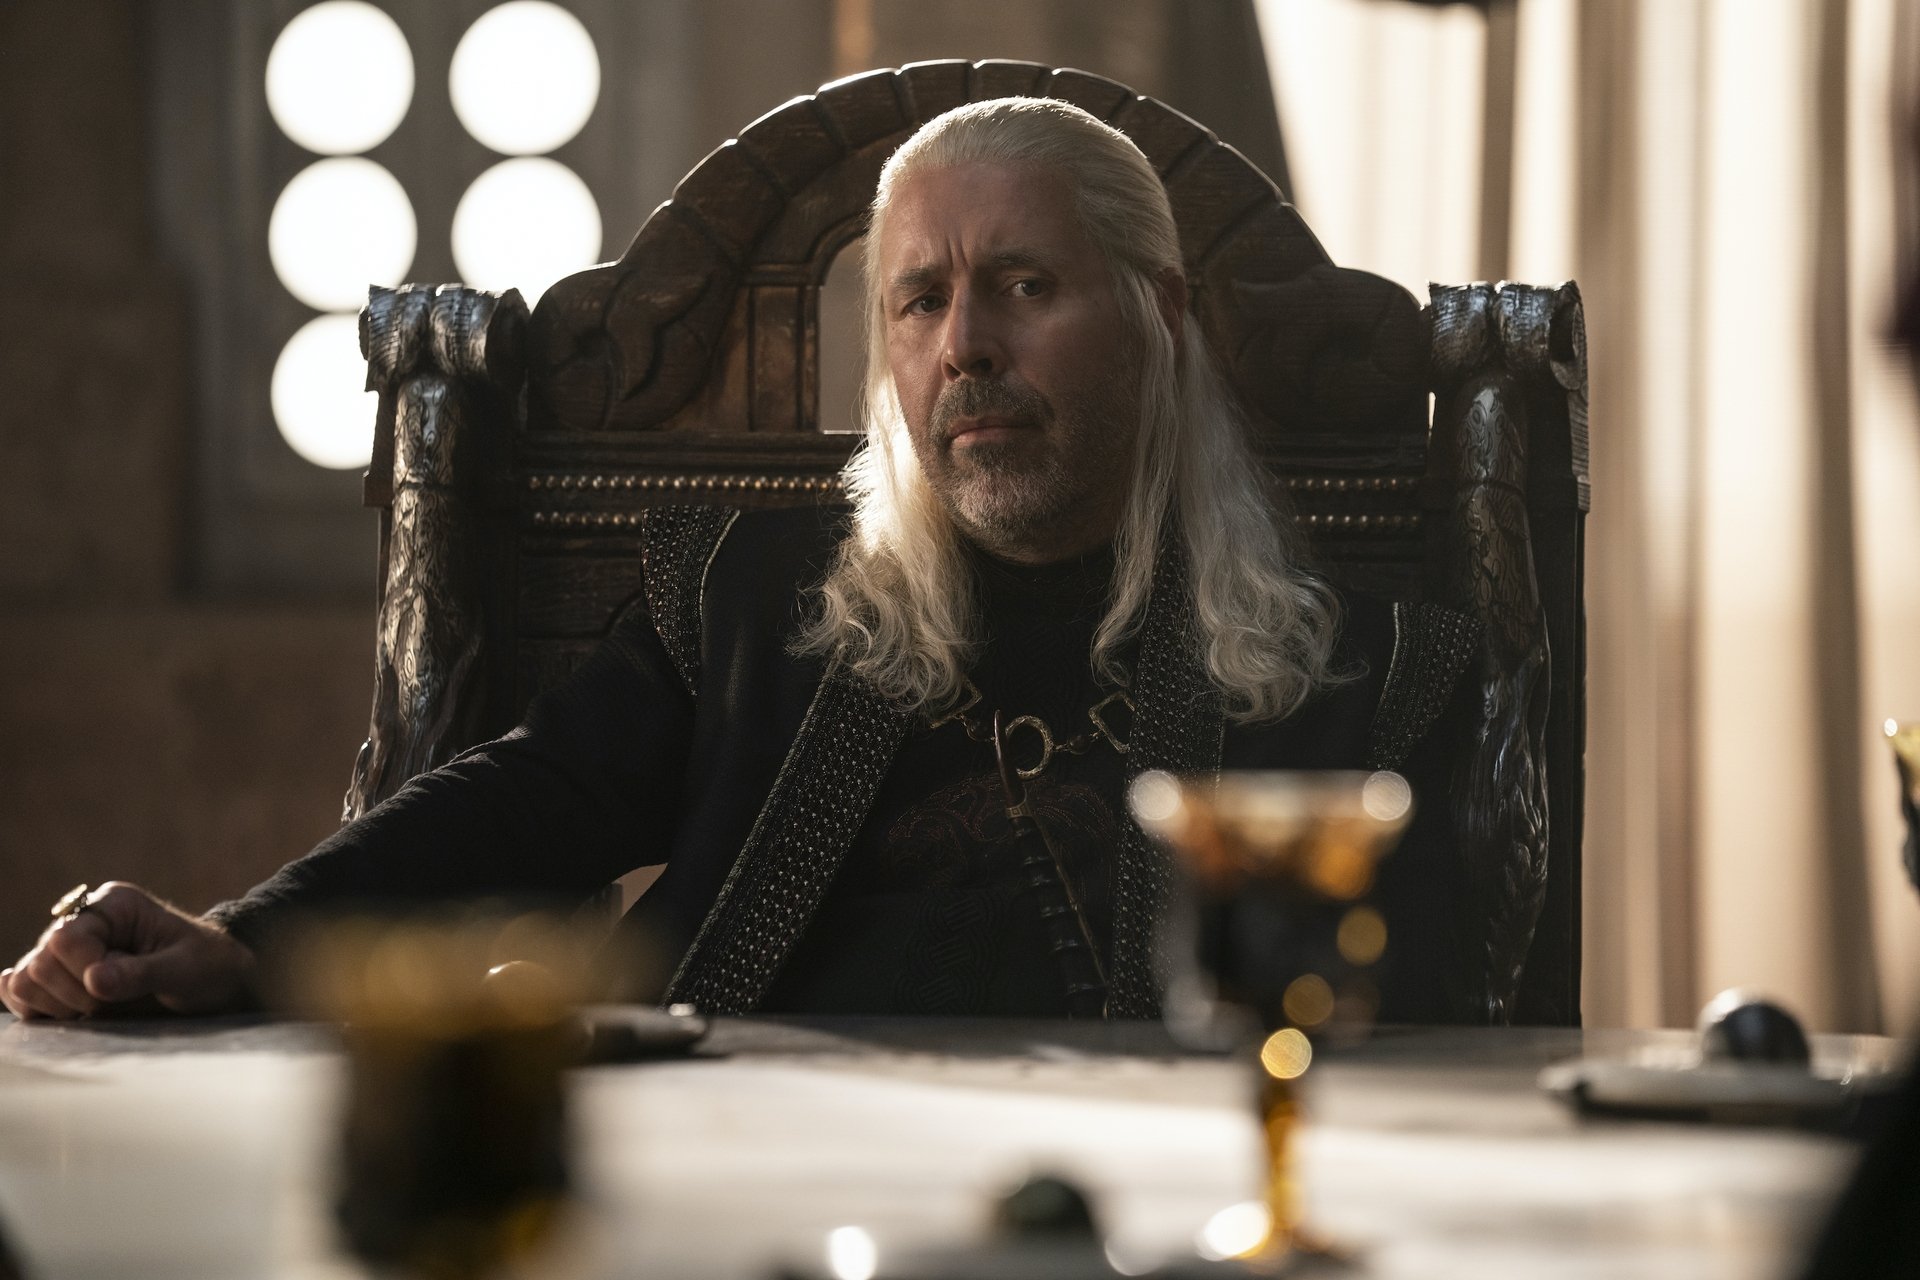 Gambar yang dirilis oleh HBO Max ini menunjukkan Paddy Considine sebagai Raja Viserys Targaryen dalam sebuah adegan dari 